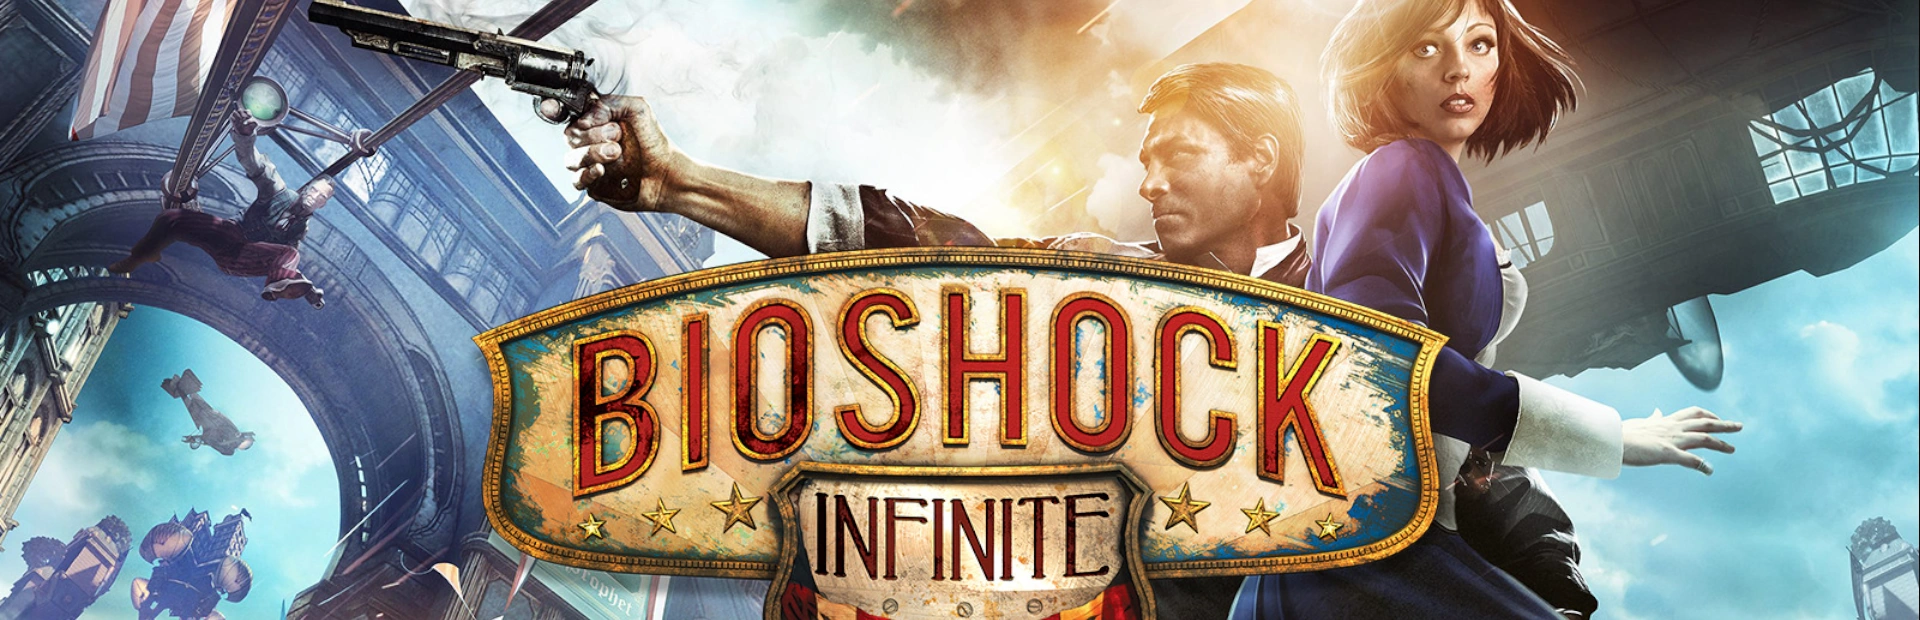 دانلود بازی BioShock Infinite: The Complete Edition برای PC | گیمباتو 